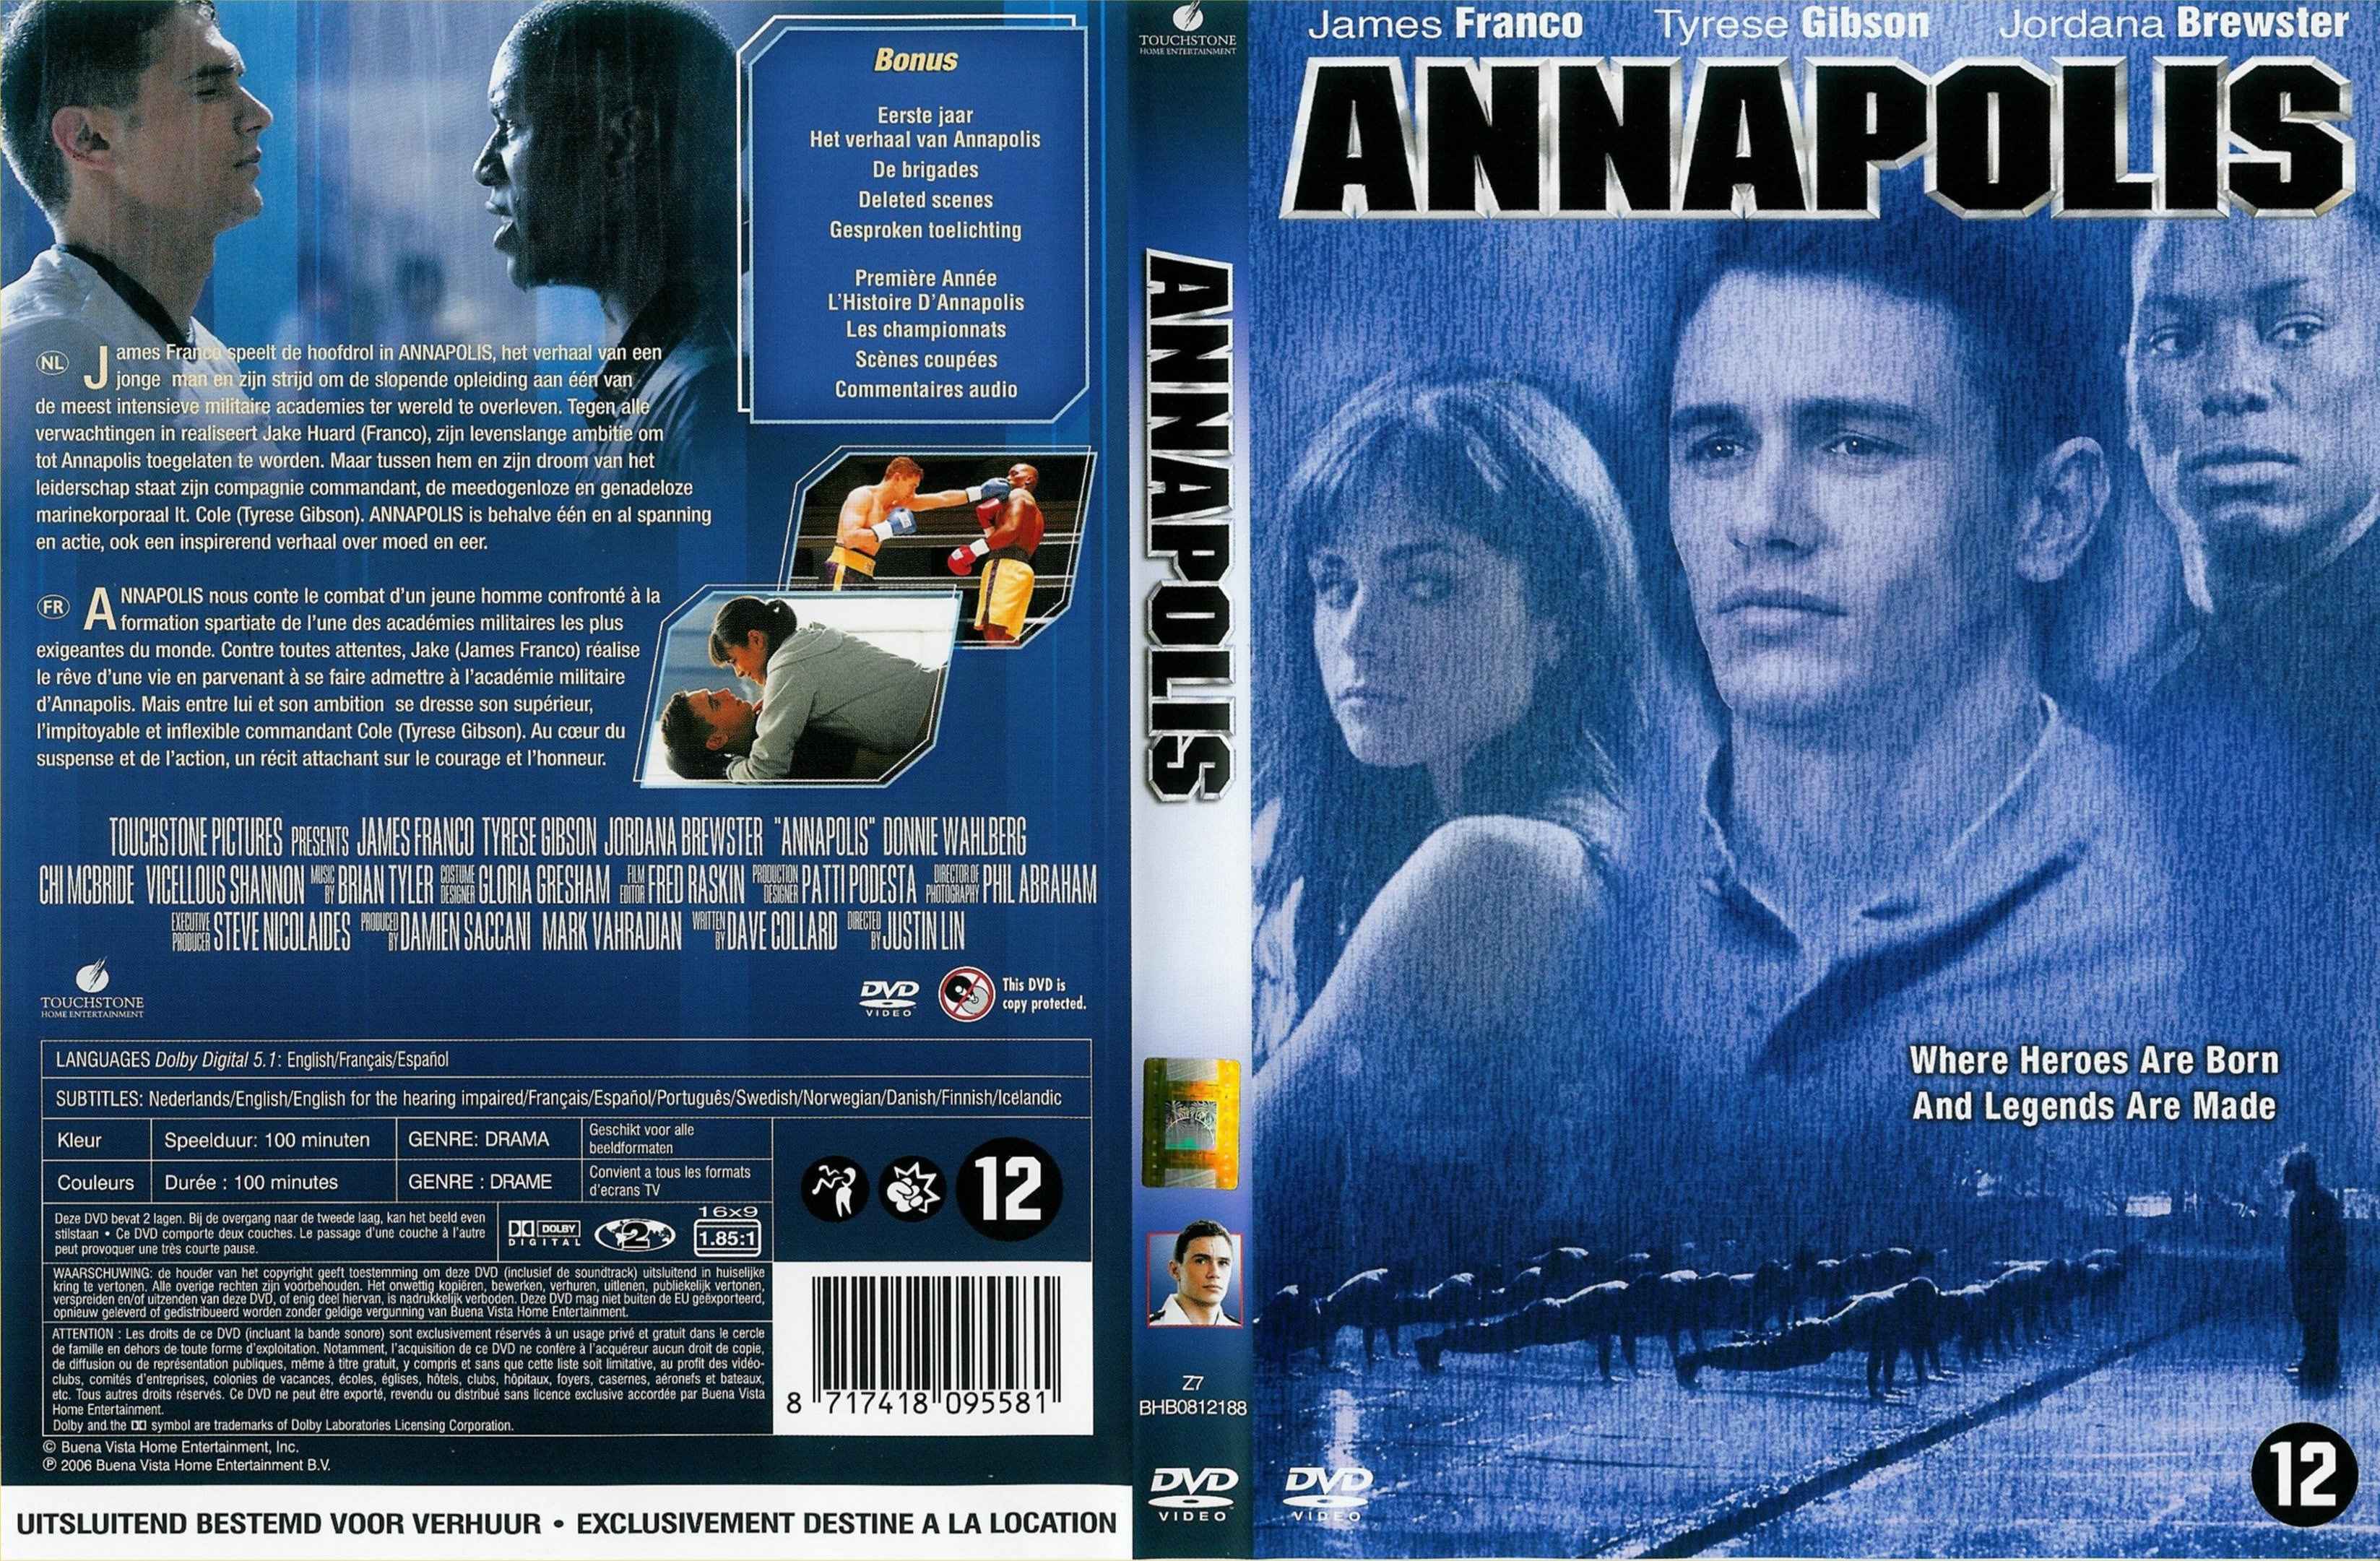 Jaquette DVD Annapolis v2